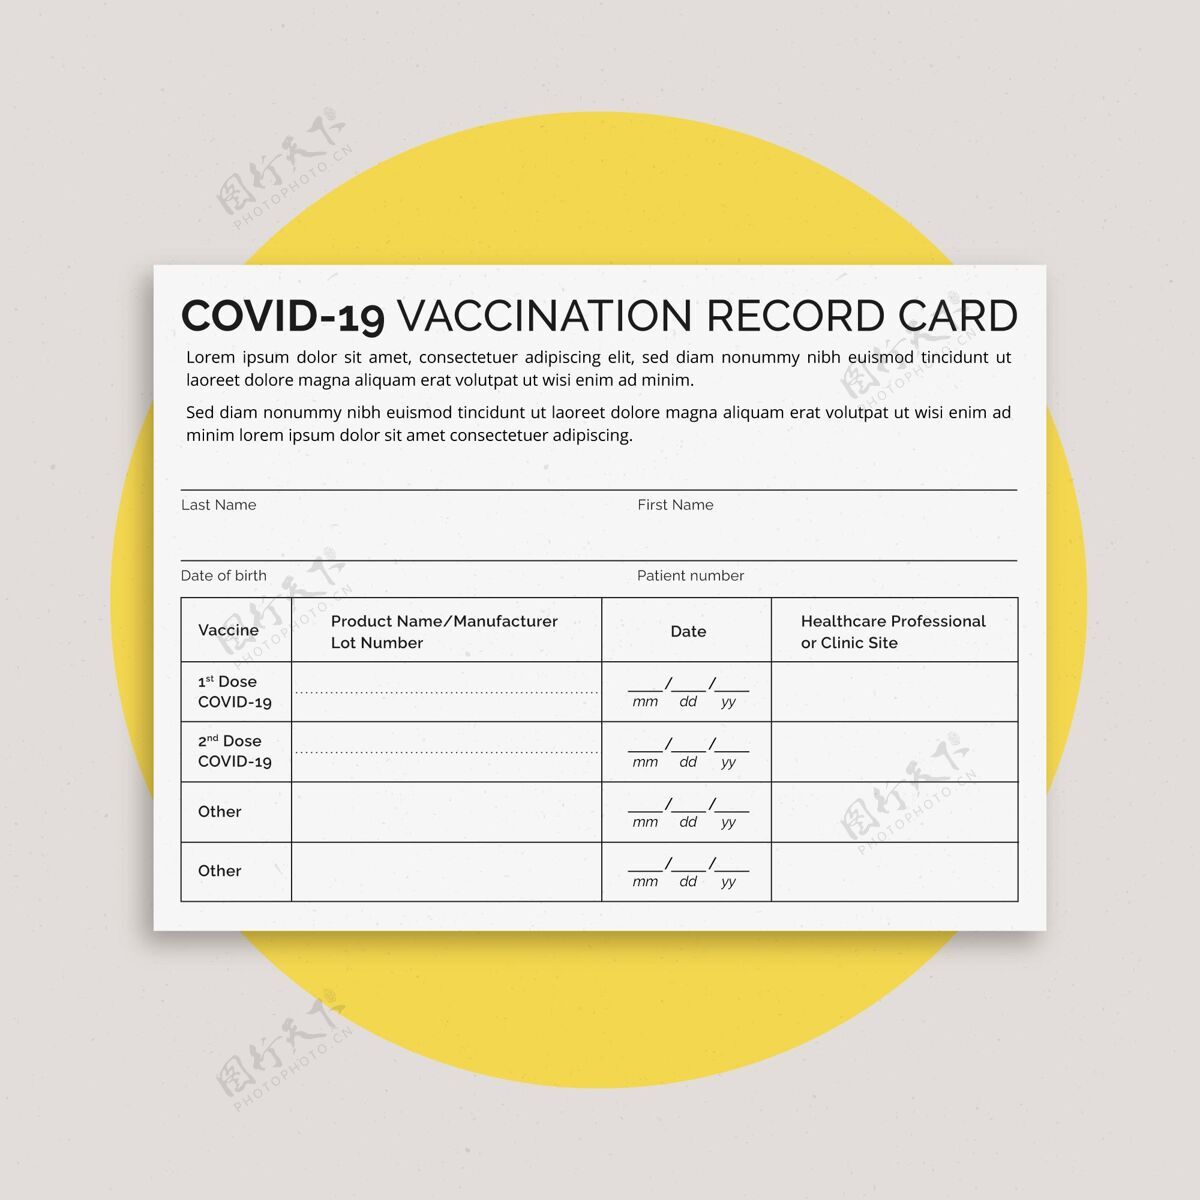 流感冠状病毒疫苗接种记录卡感染记录卡健康